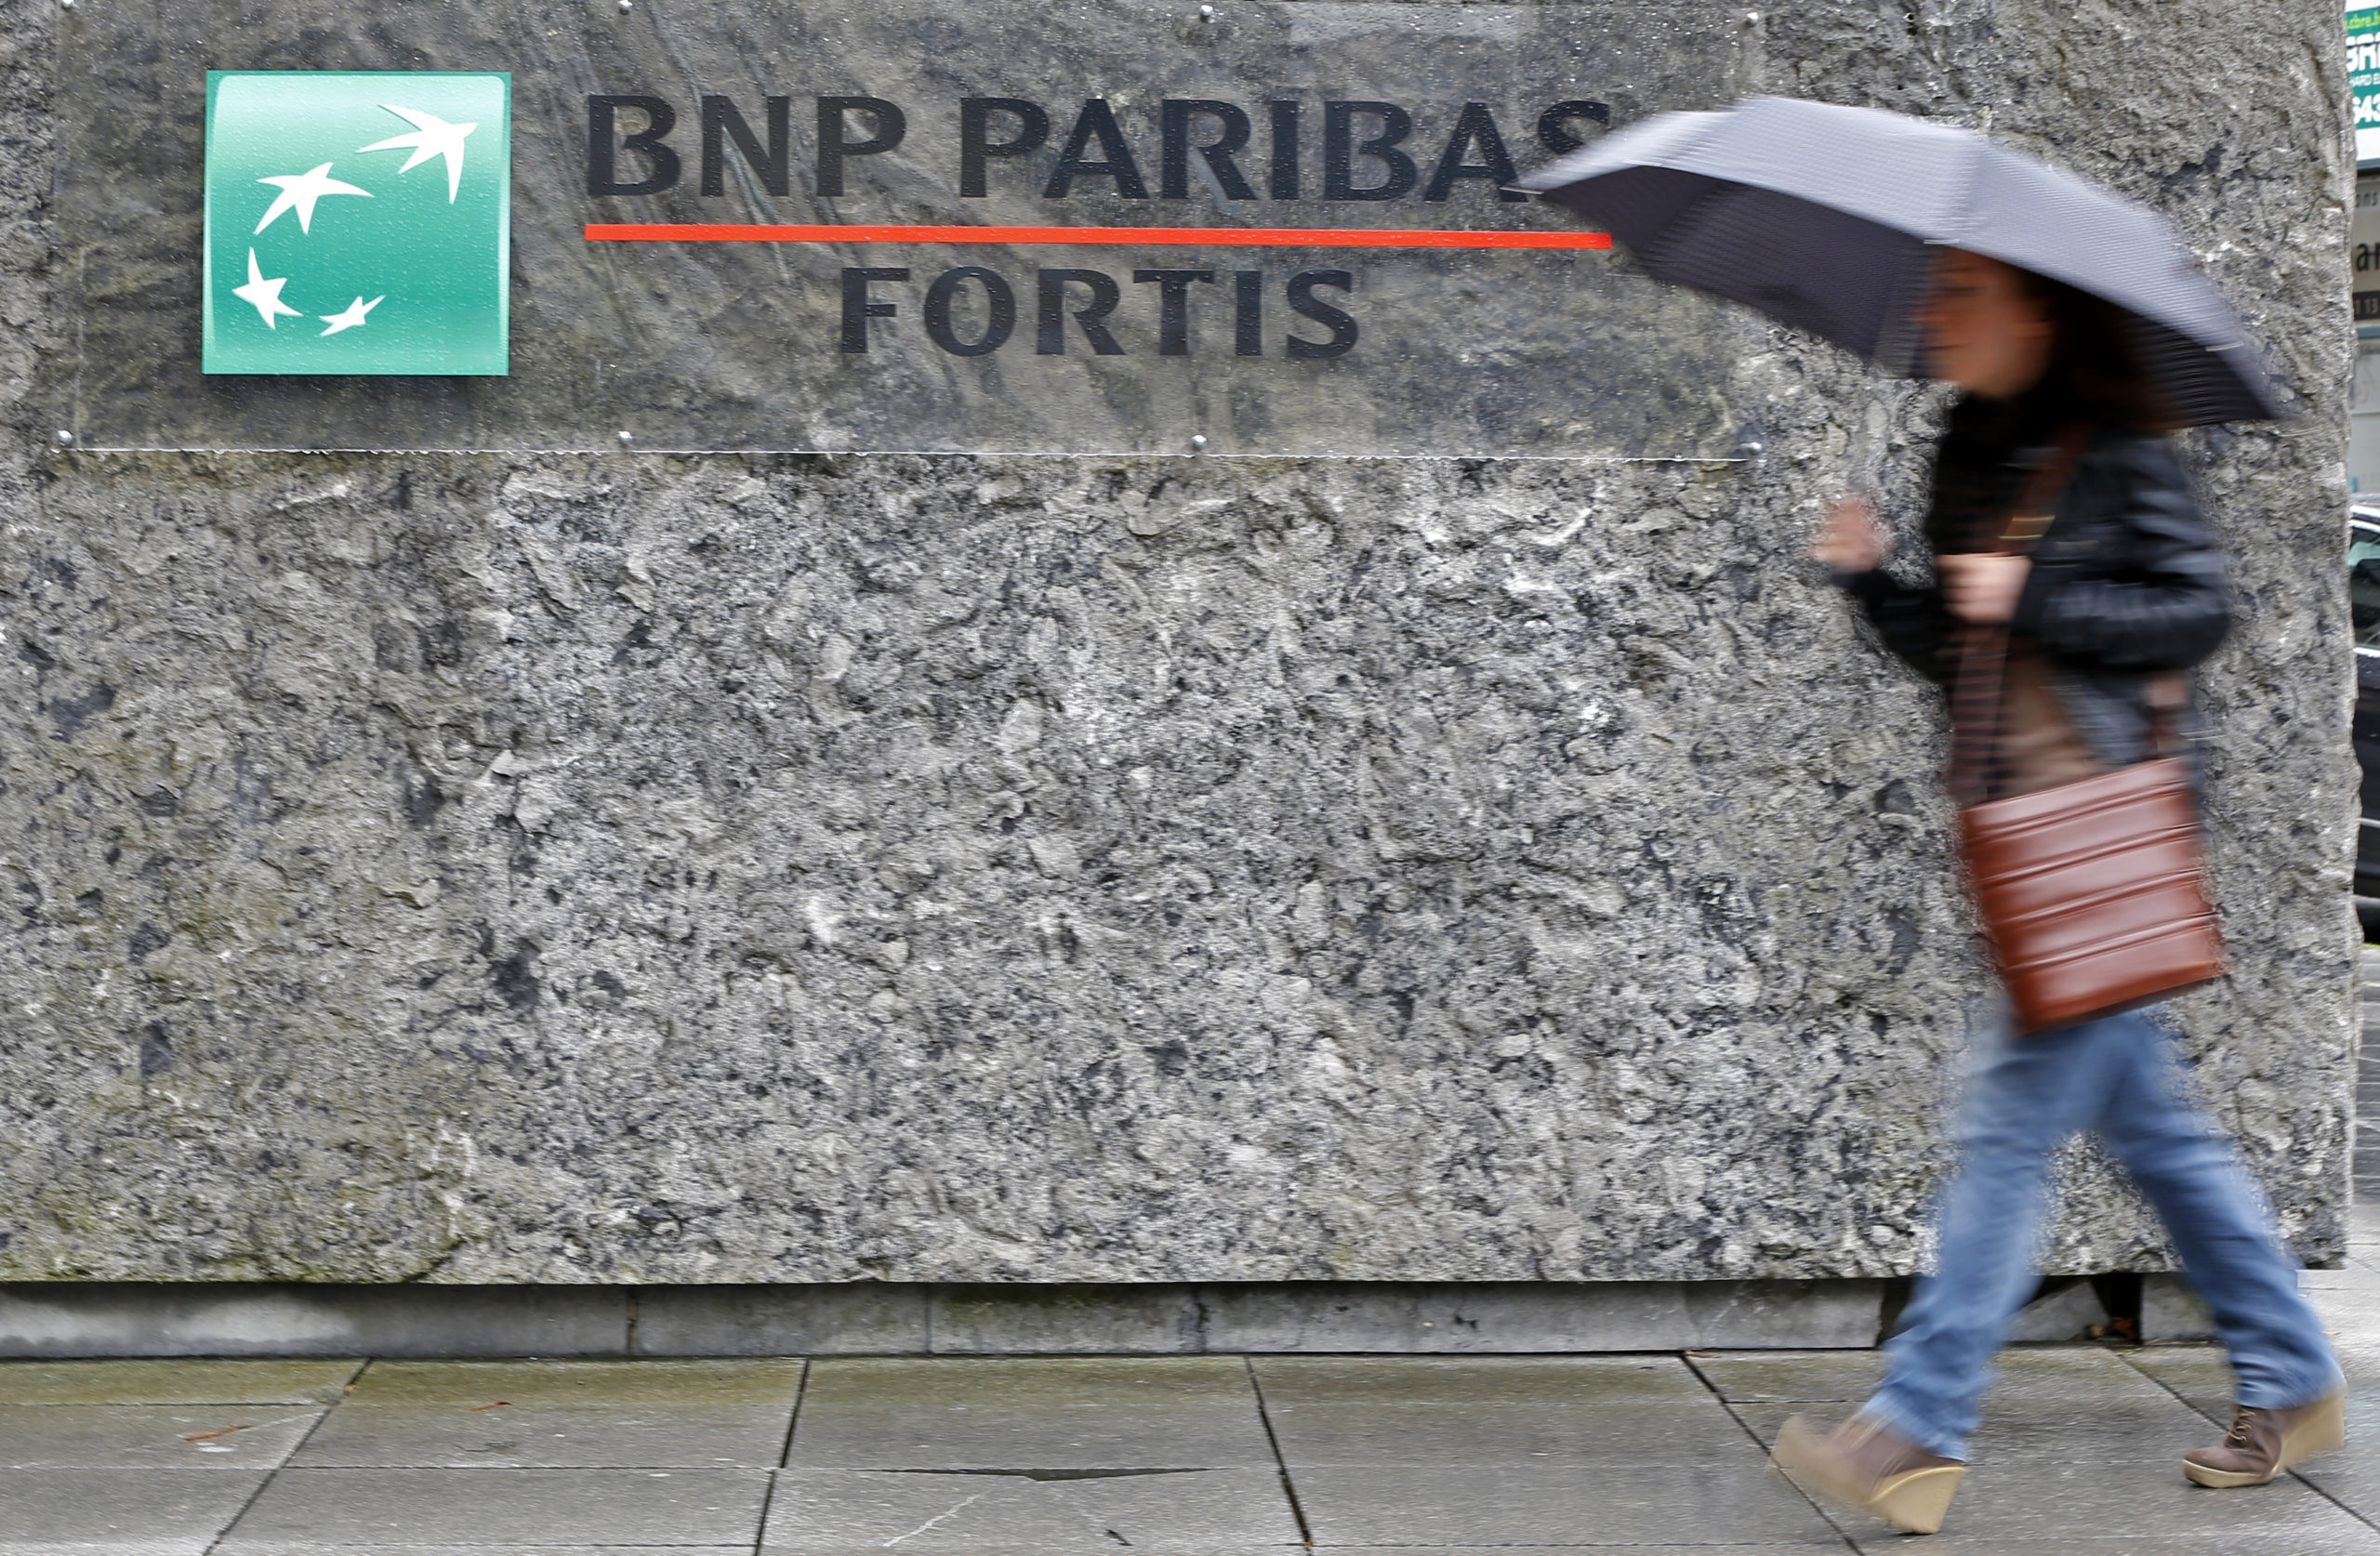 NIEUWS: De Belgische centrale bank legt BNP Paribas een boete van € 15 miljoen op voor ‘flagrant’ AML-falen